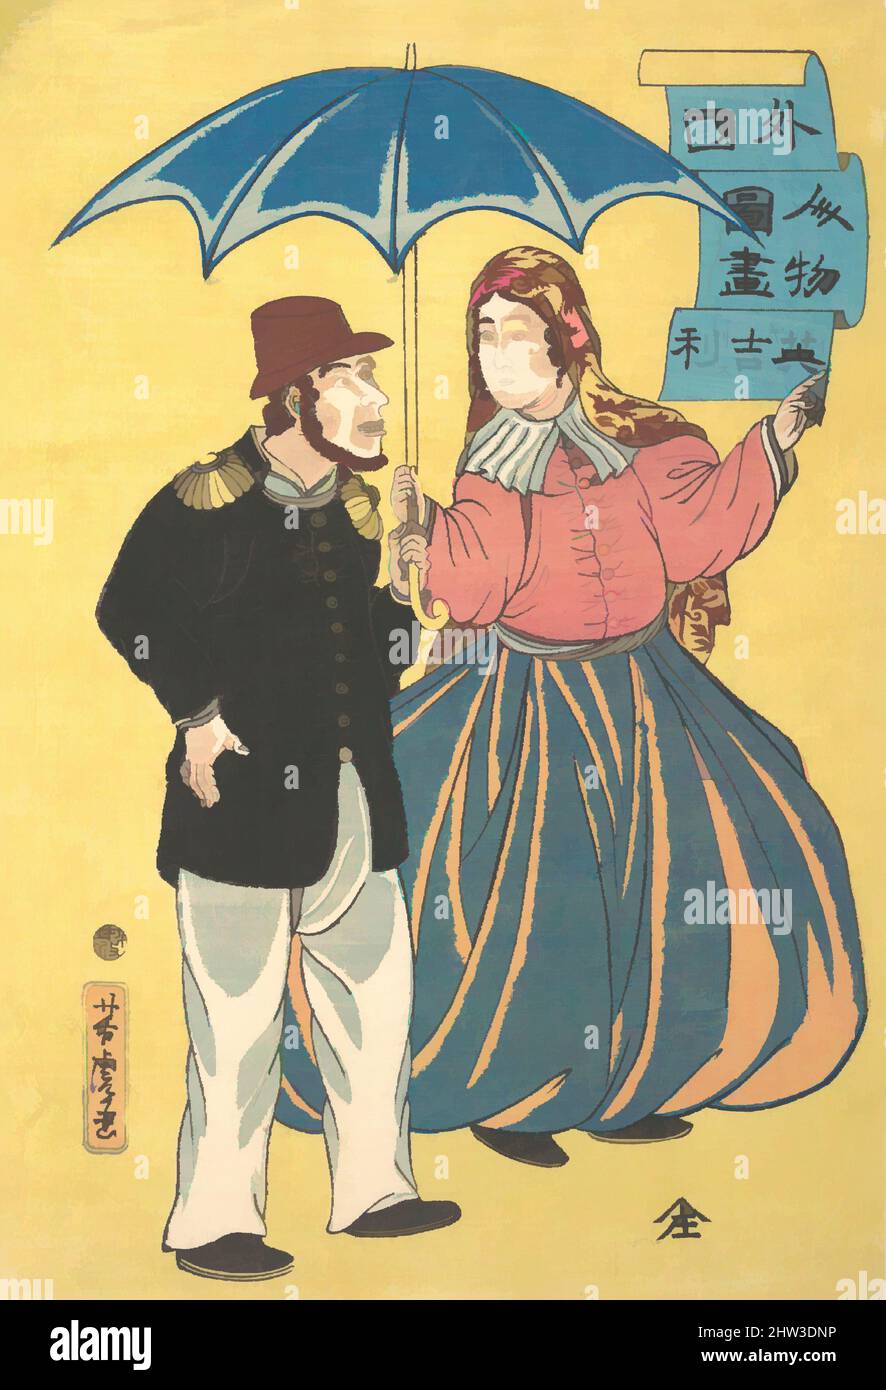 Art inspiré par un couple anglais partageant un parapluie, époque Edo (1615–1868), Japon, imprimé en polychrome sur bois; encre et couleur sur papier, 14 3/4 x 9 3/4 po. (37,5 x 24,8 cm), tirages, Utagawa Yoshitora (japonais, active ca. 1850–80, œuvres classiques modernisées par Artotop avec une touche de modernité. Formes, couleur et valeur, impact visuel accrocheur sur l'art émotions par la liberté d'œuvres d'art d'une manière contemporaine. Un message intemporel qui cherche une nouvelle direction créative. Artistes qui se tournent vers le support numérique et créent le NFT Artotop Banque D'Images